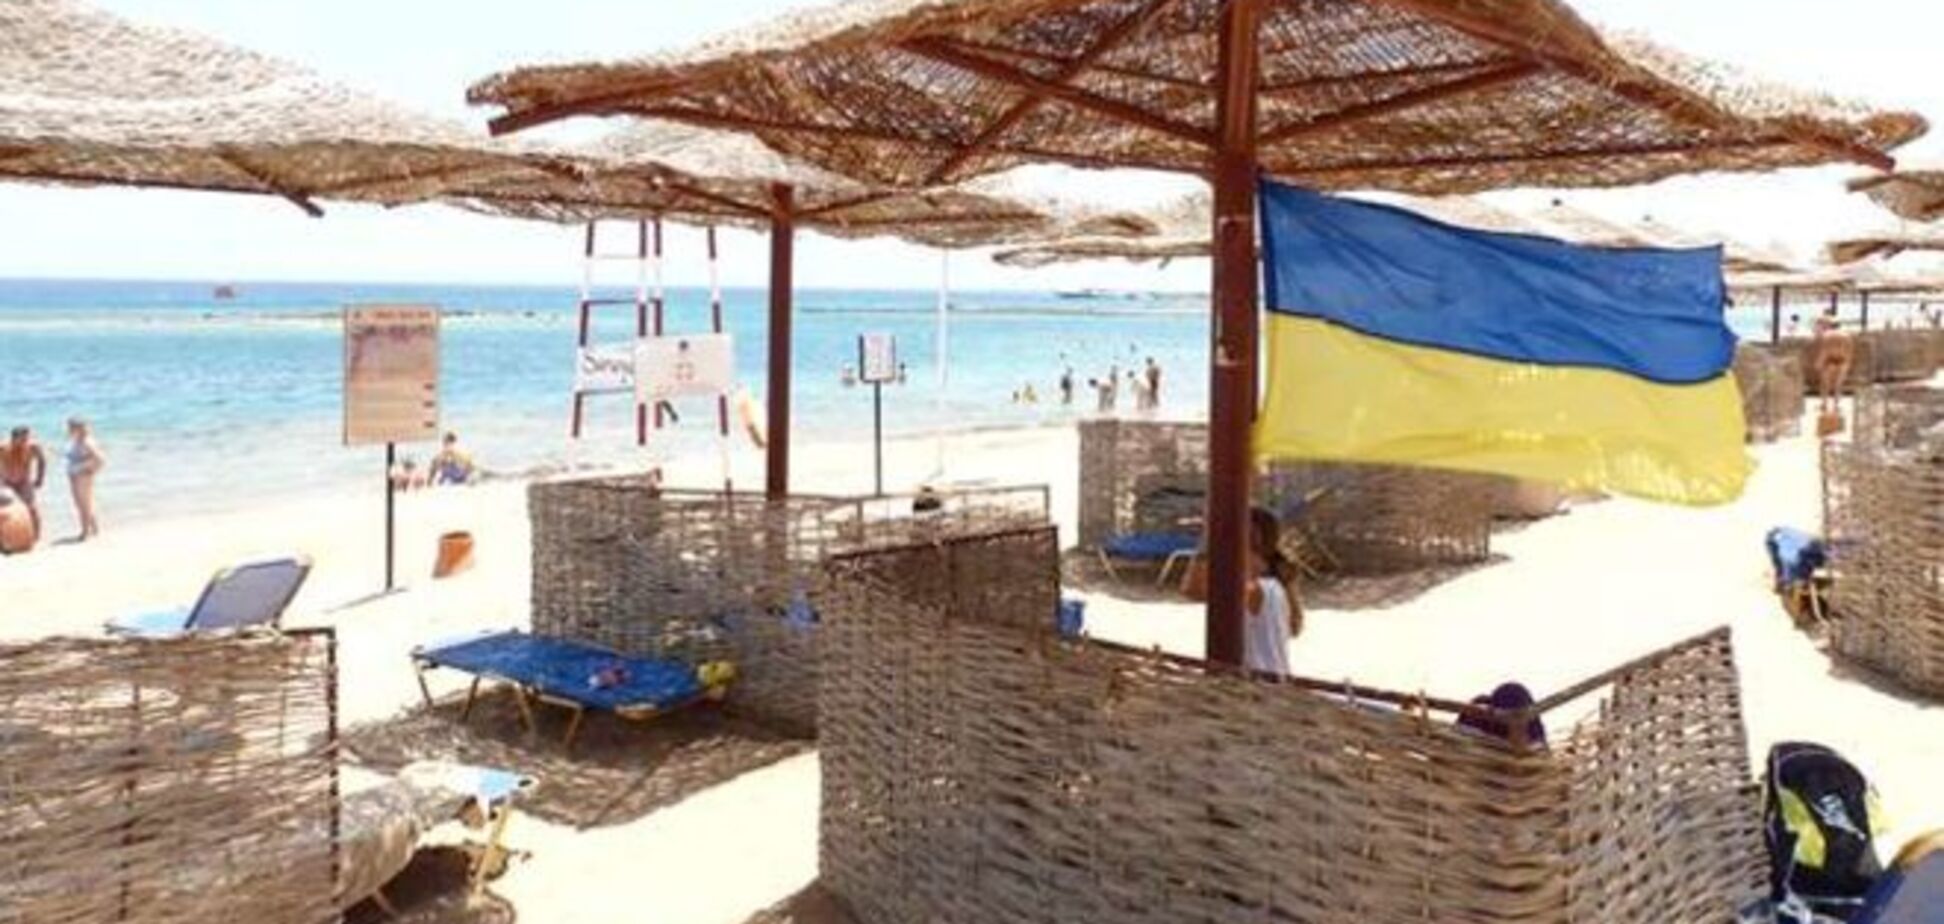 Пляжные войны: россияне провоцируют конфликты с украинцами на курортах